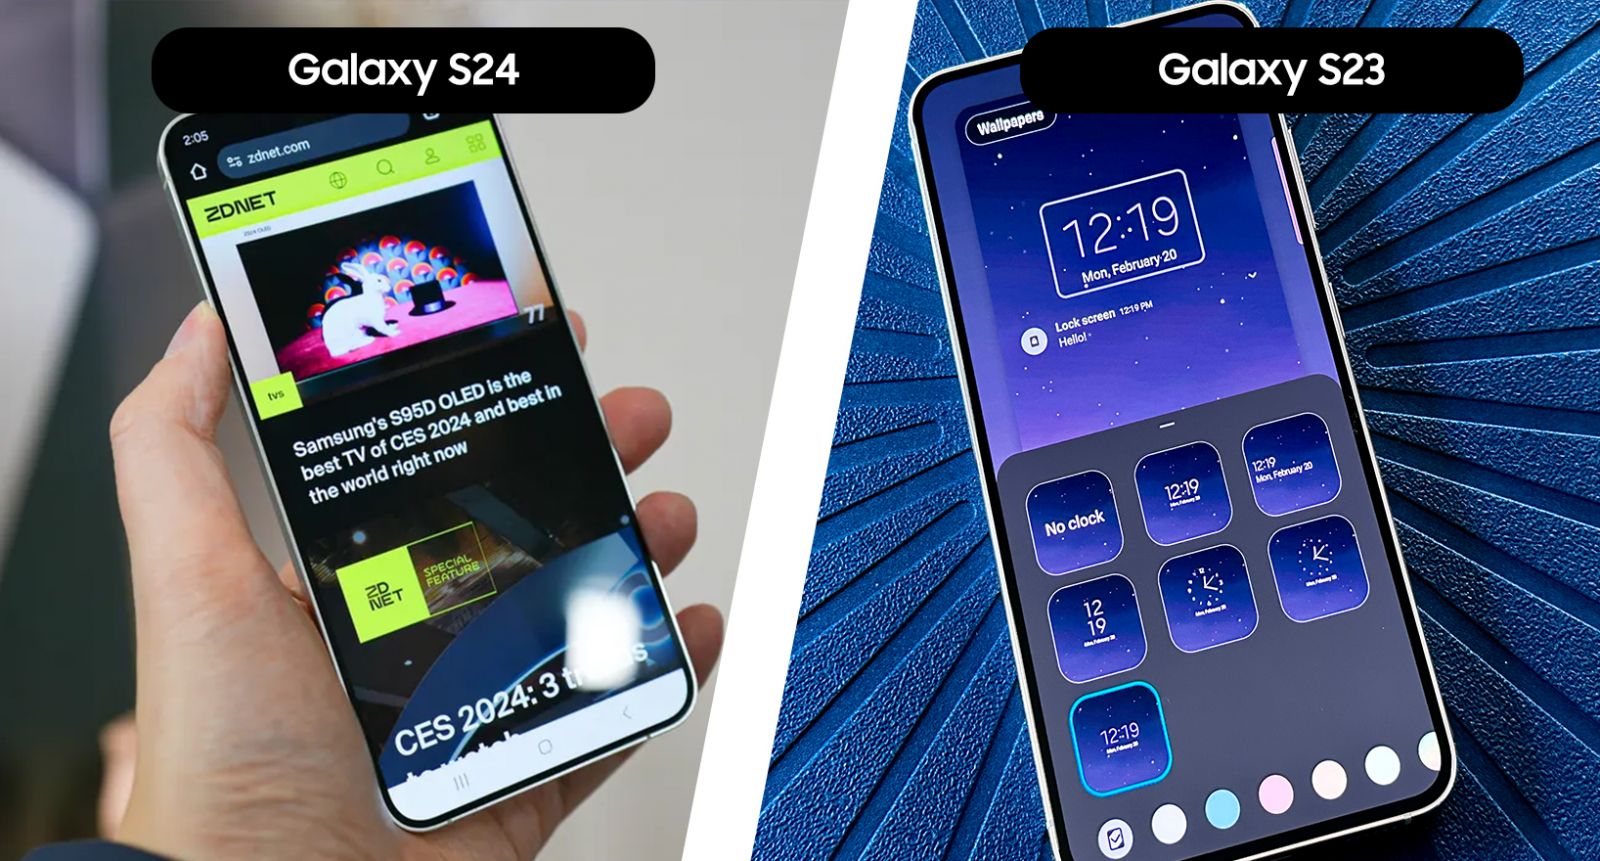 مقایسه نرم افزار گوشی Galaxy S24 با گوشی Galaxy S23 